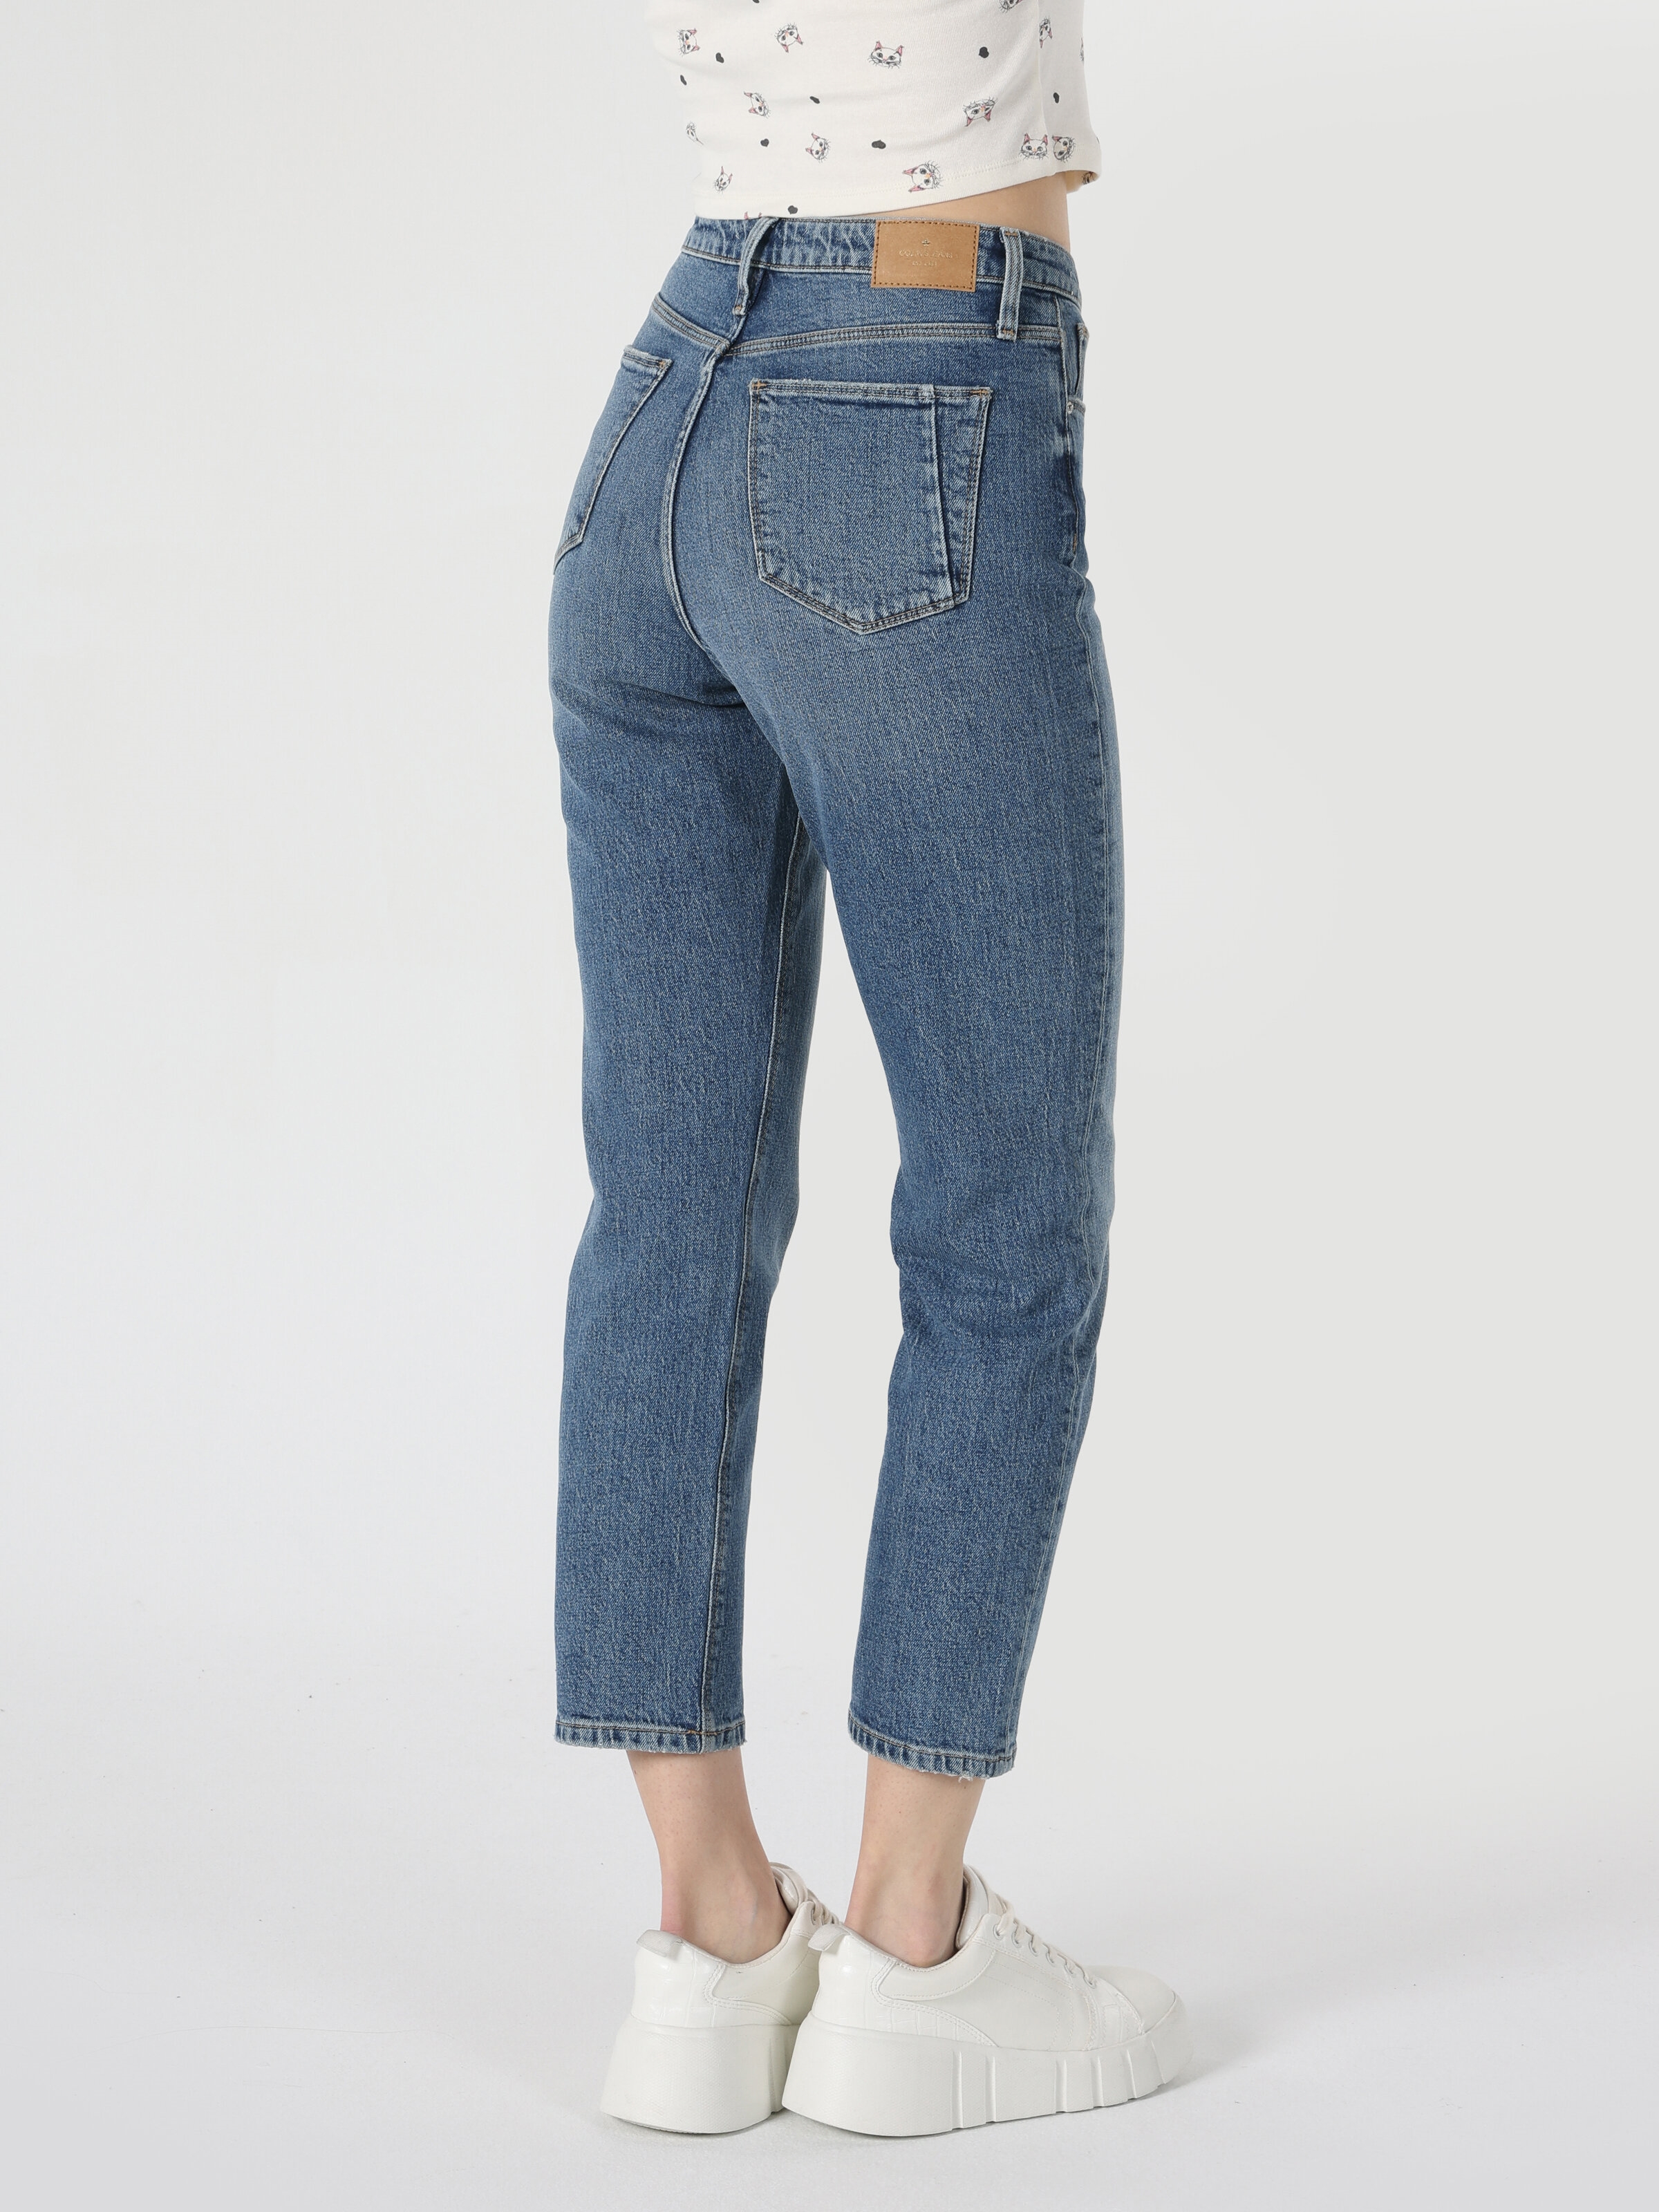 Afficher les détails de 891 Maya Pantalon En Jean Bleu Pour Femme, Coupe Slim, Taille Normale, Jambe Effilée